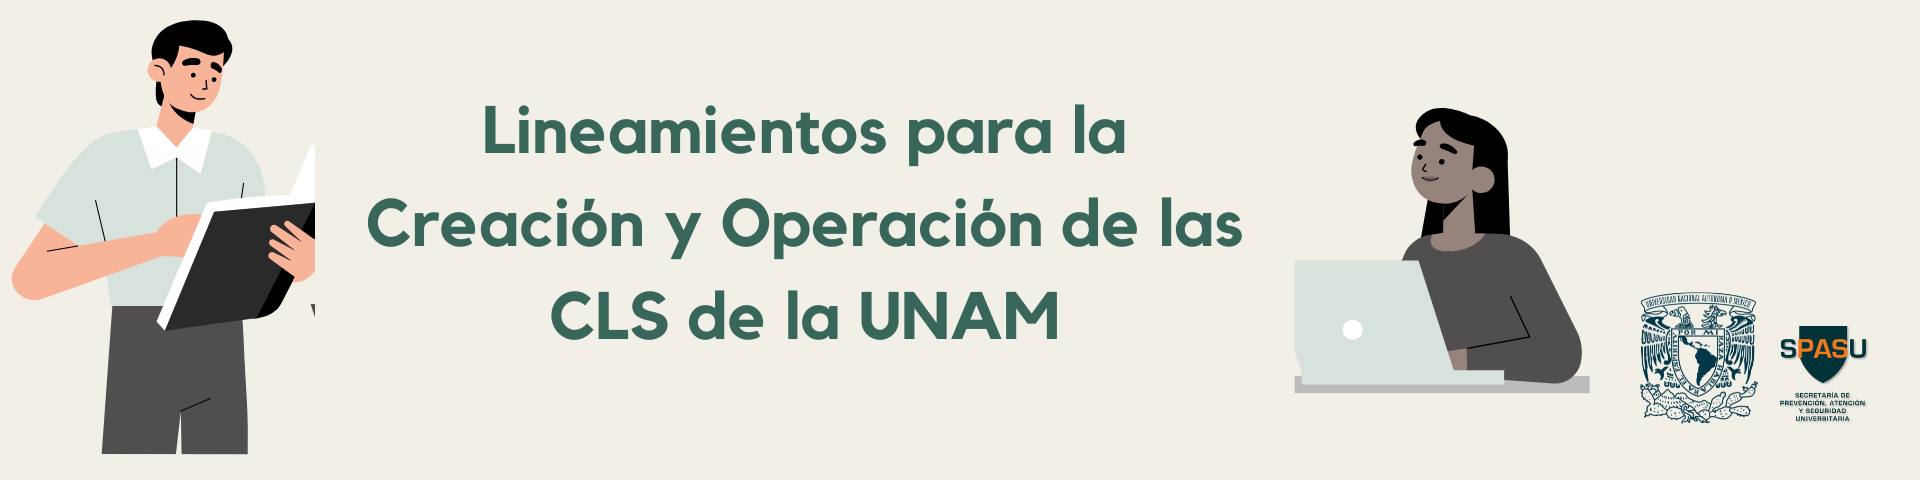 LINEAMIENTOS PARA LA CREACIÓN Y OPERACIÓN DE LAS CLS DE LA UNAM